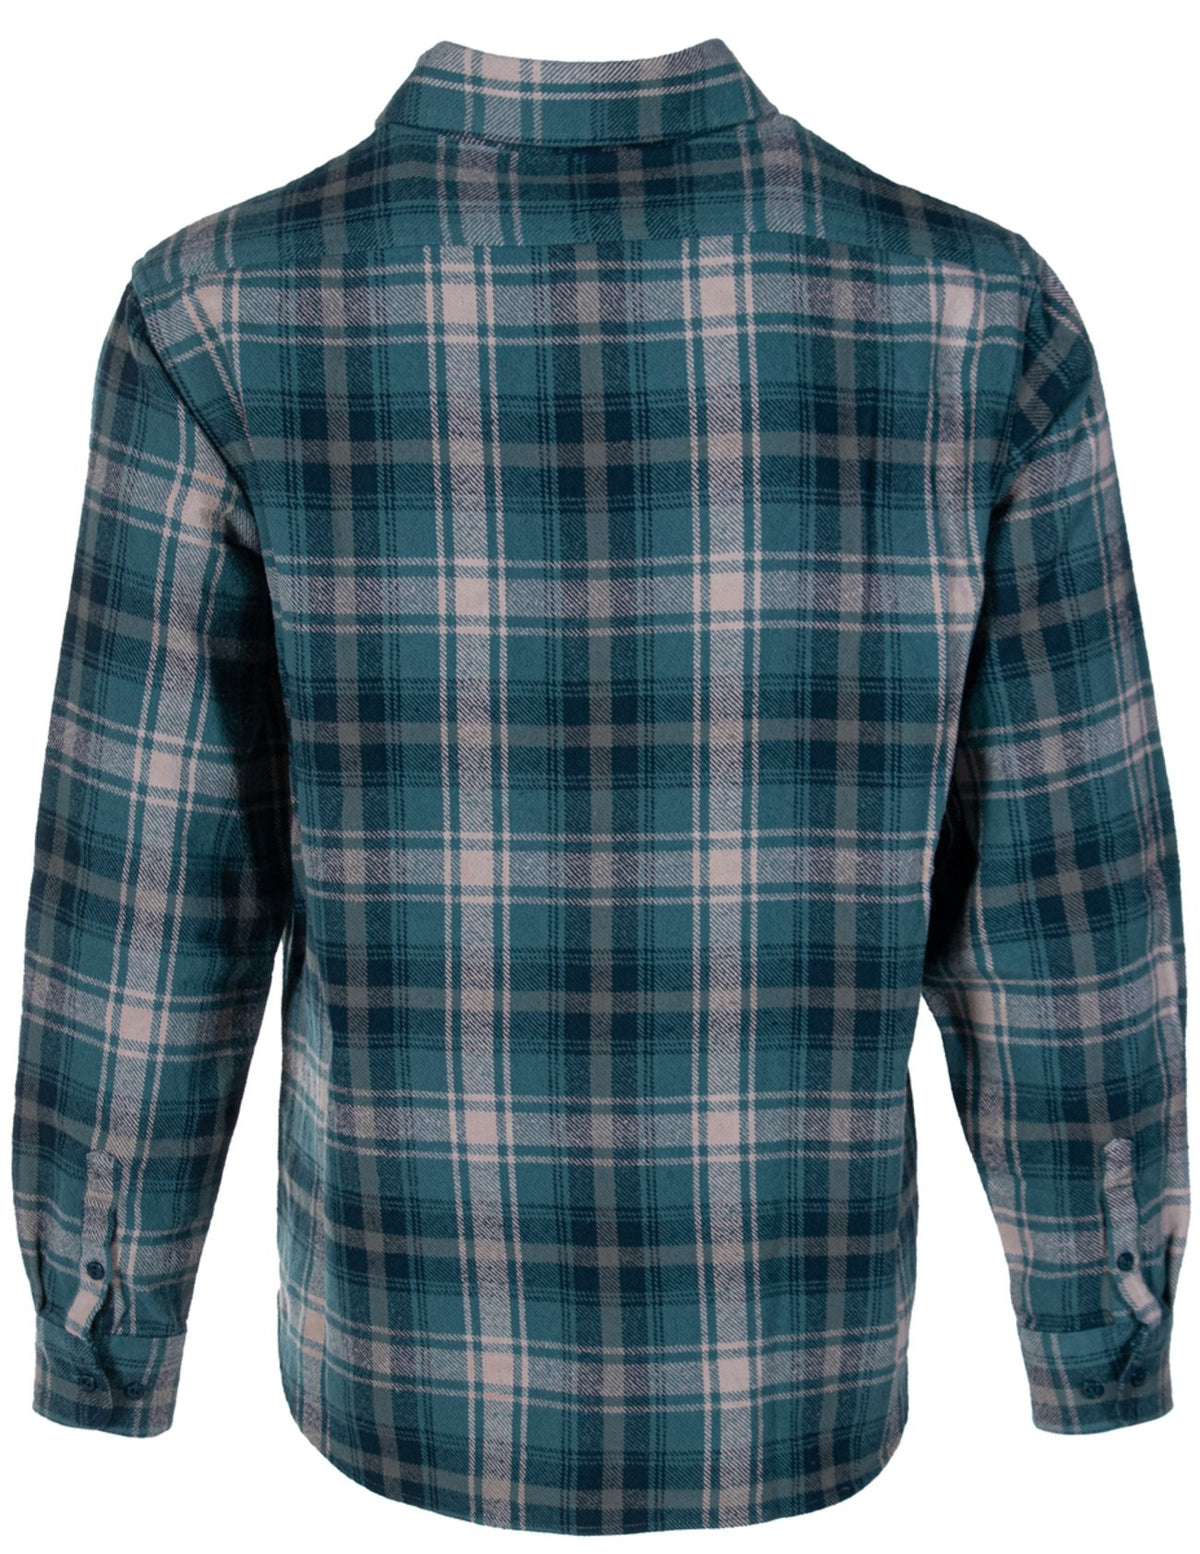 Schott NYC Cadet Plaid Cotton Flannel Shirt - Dudes Boutique